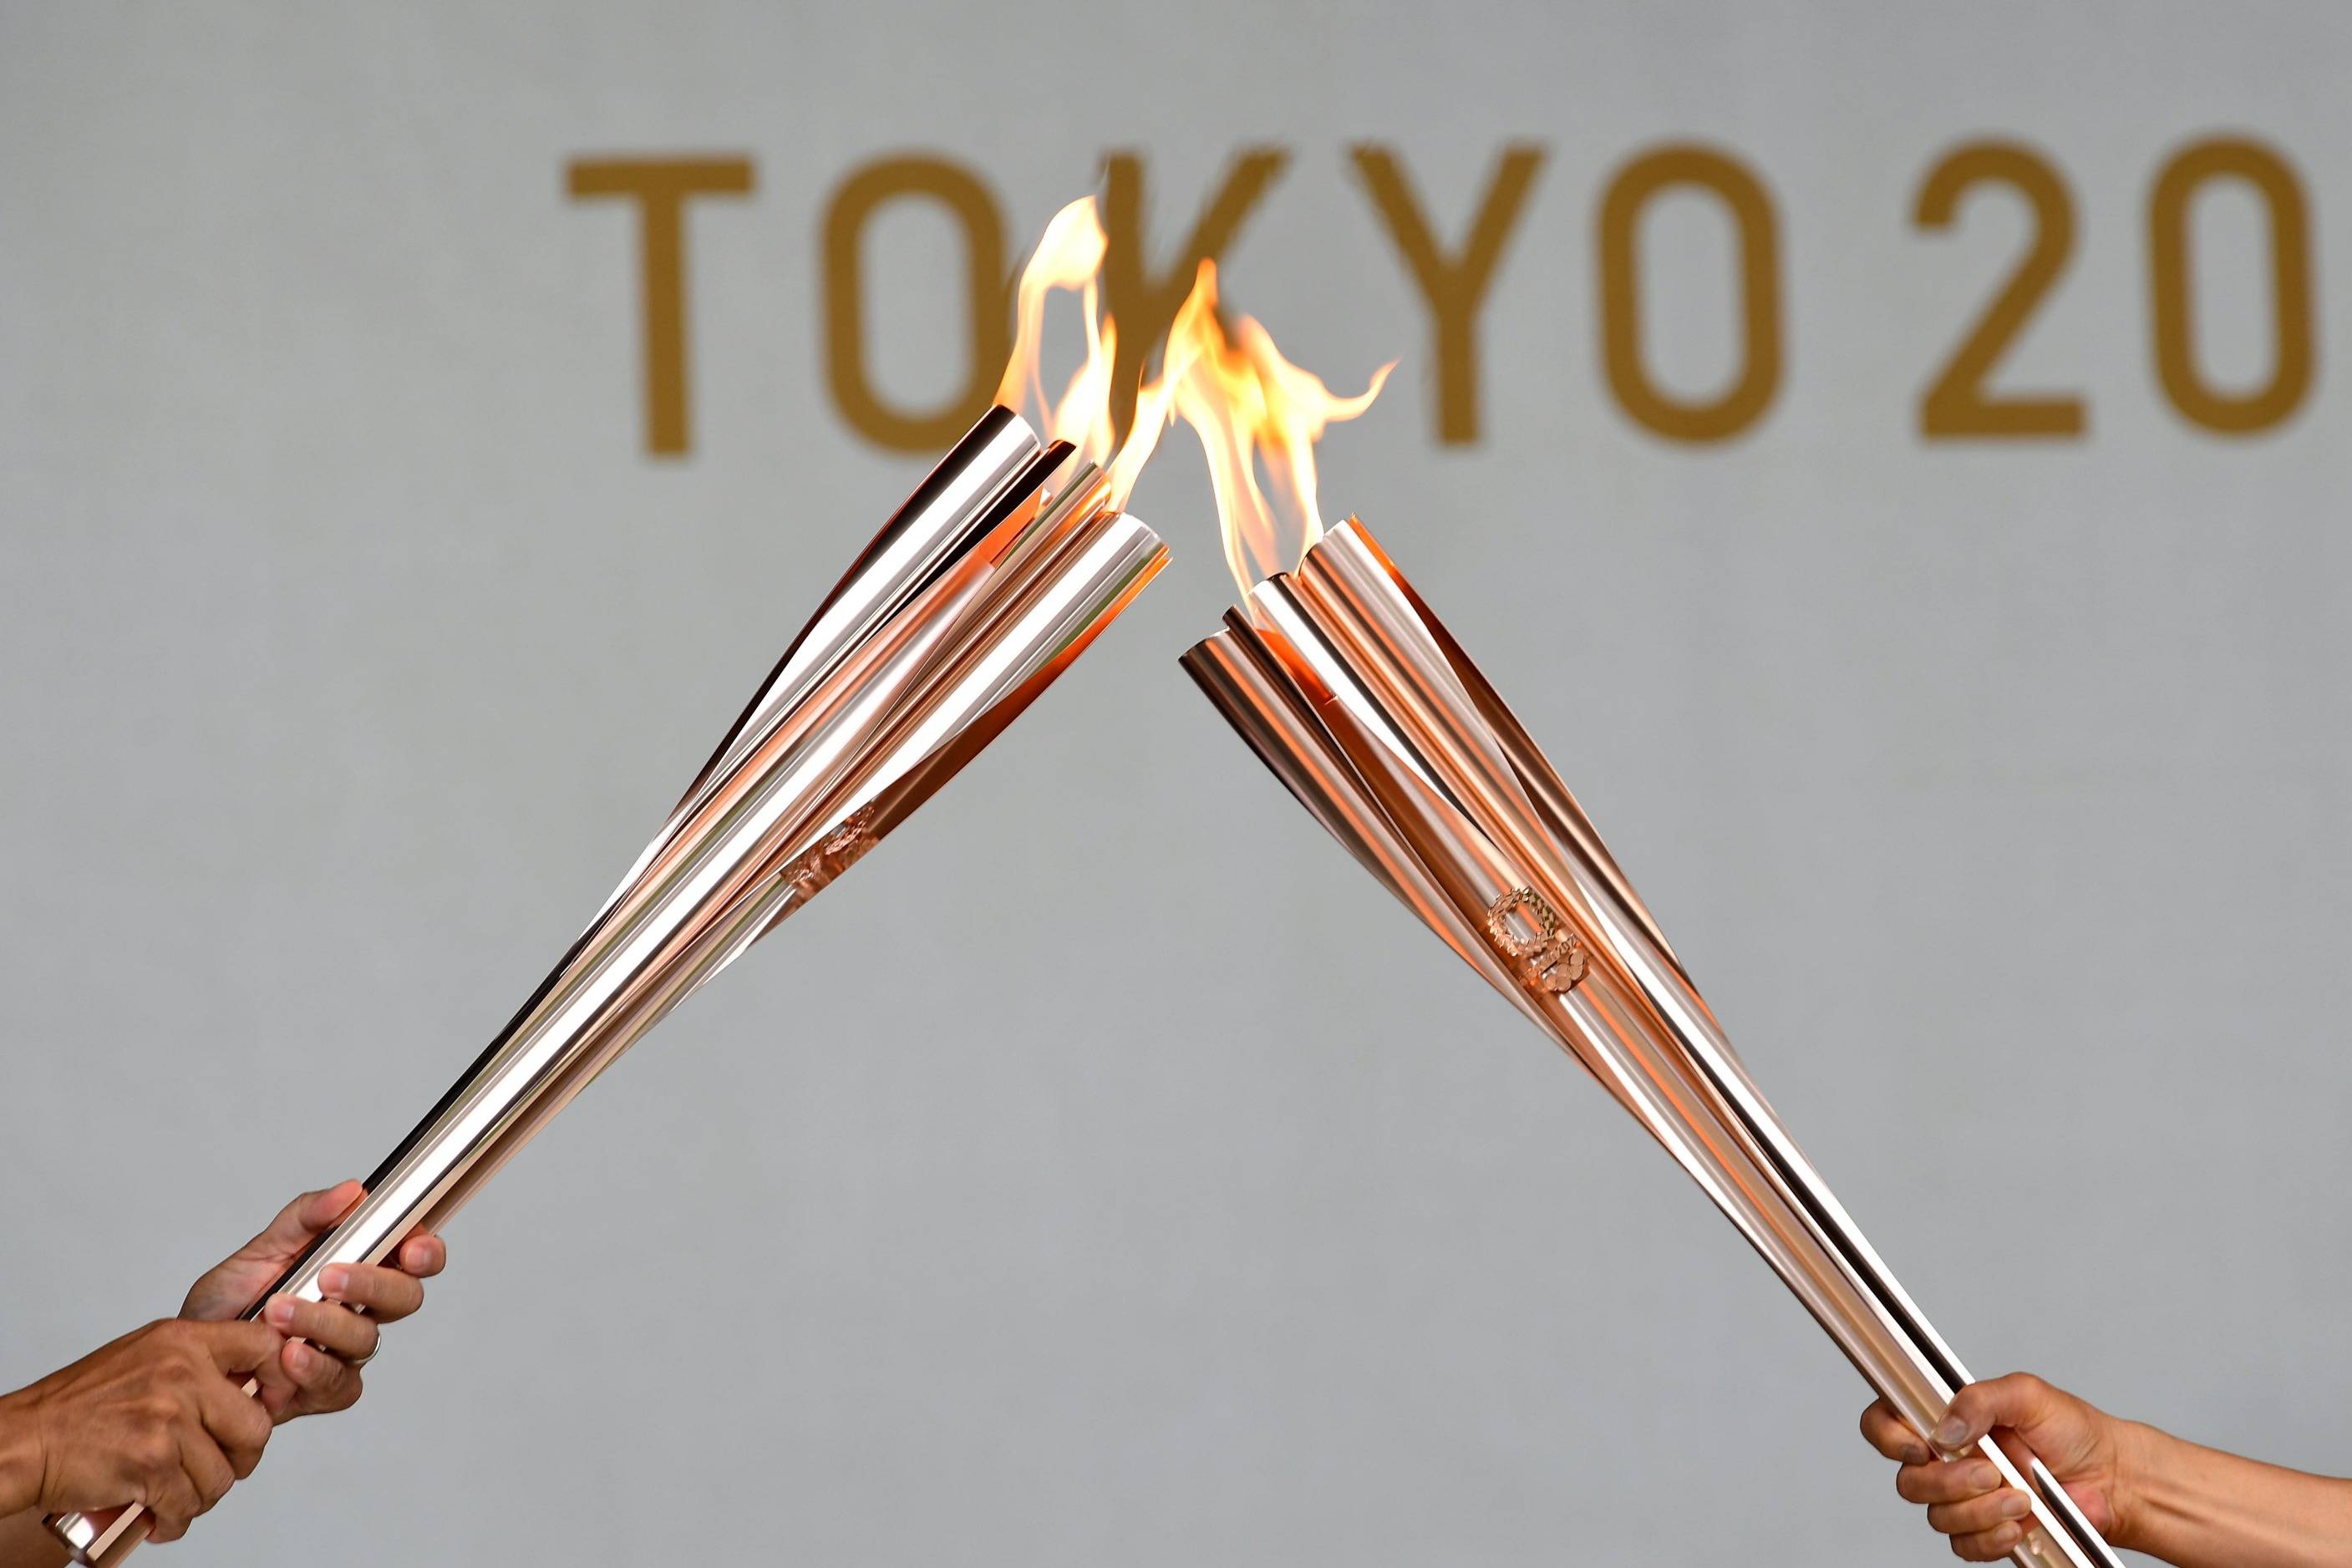 东京奥运火炬只有1.2公斤 活用灾区材料达到环保效果